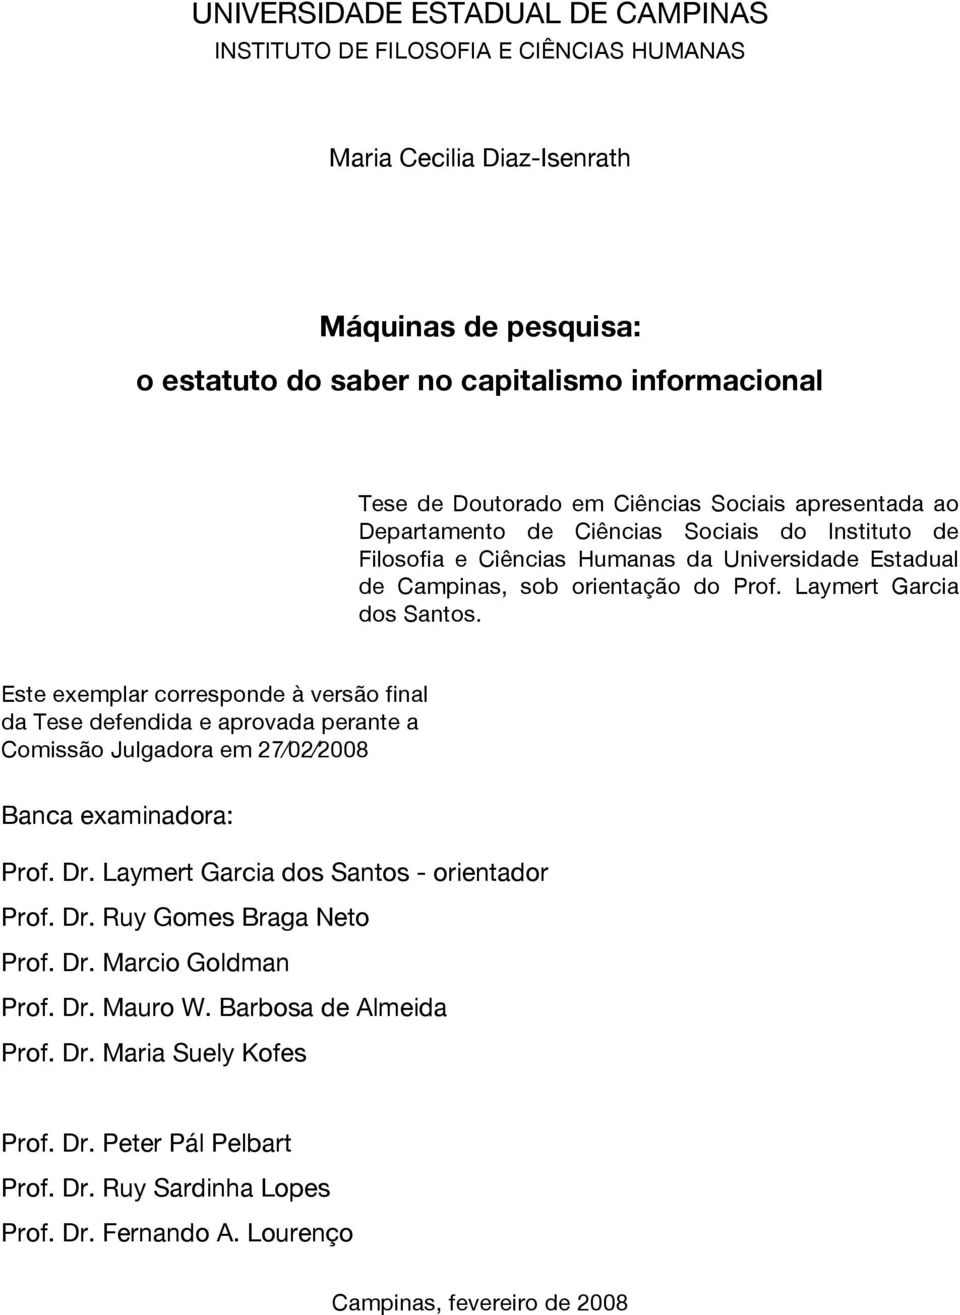 Este exemplar corresponde à versão final da Tese defendida e aprovada perante a Comissão Julgadora em 27 02 2008 Banca examinadora: Prof. Dr. Laymert Garcia dos Santos - orientador Prof. Dr. Ruy Gomes Braga Neto Prof.